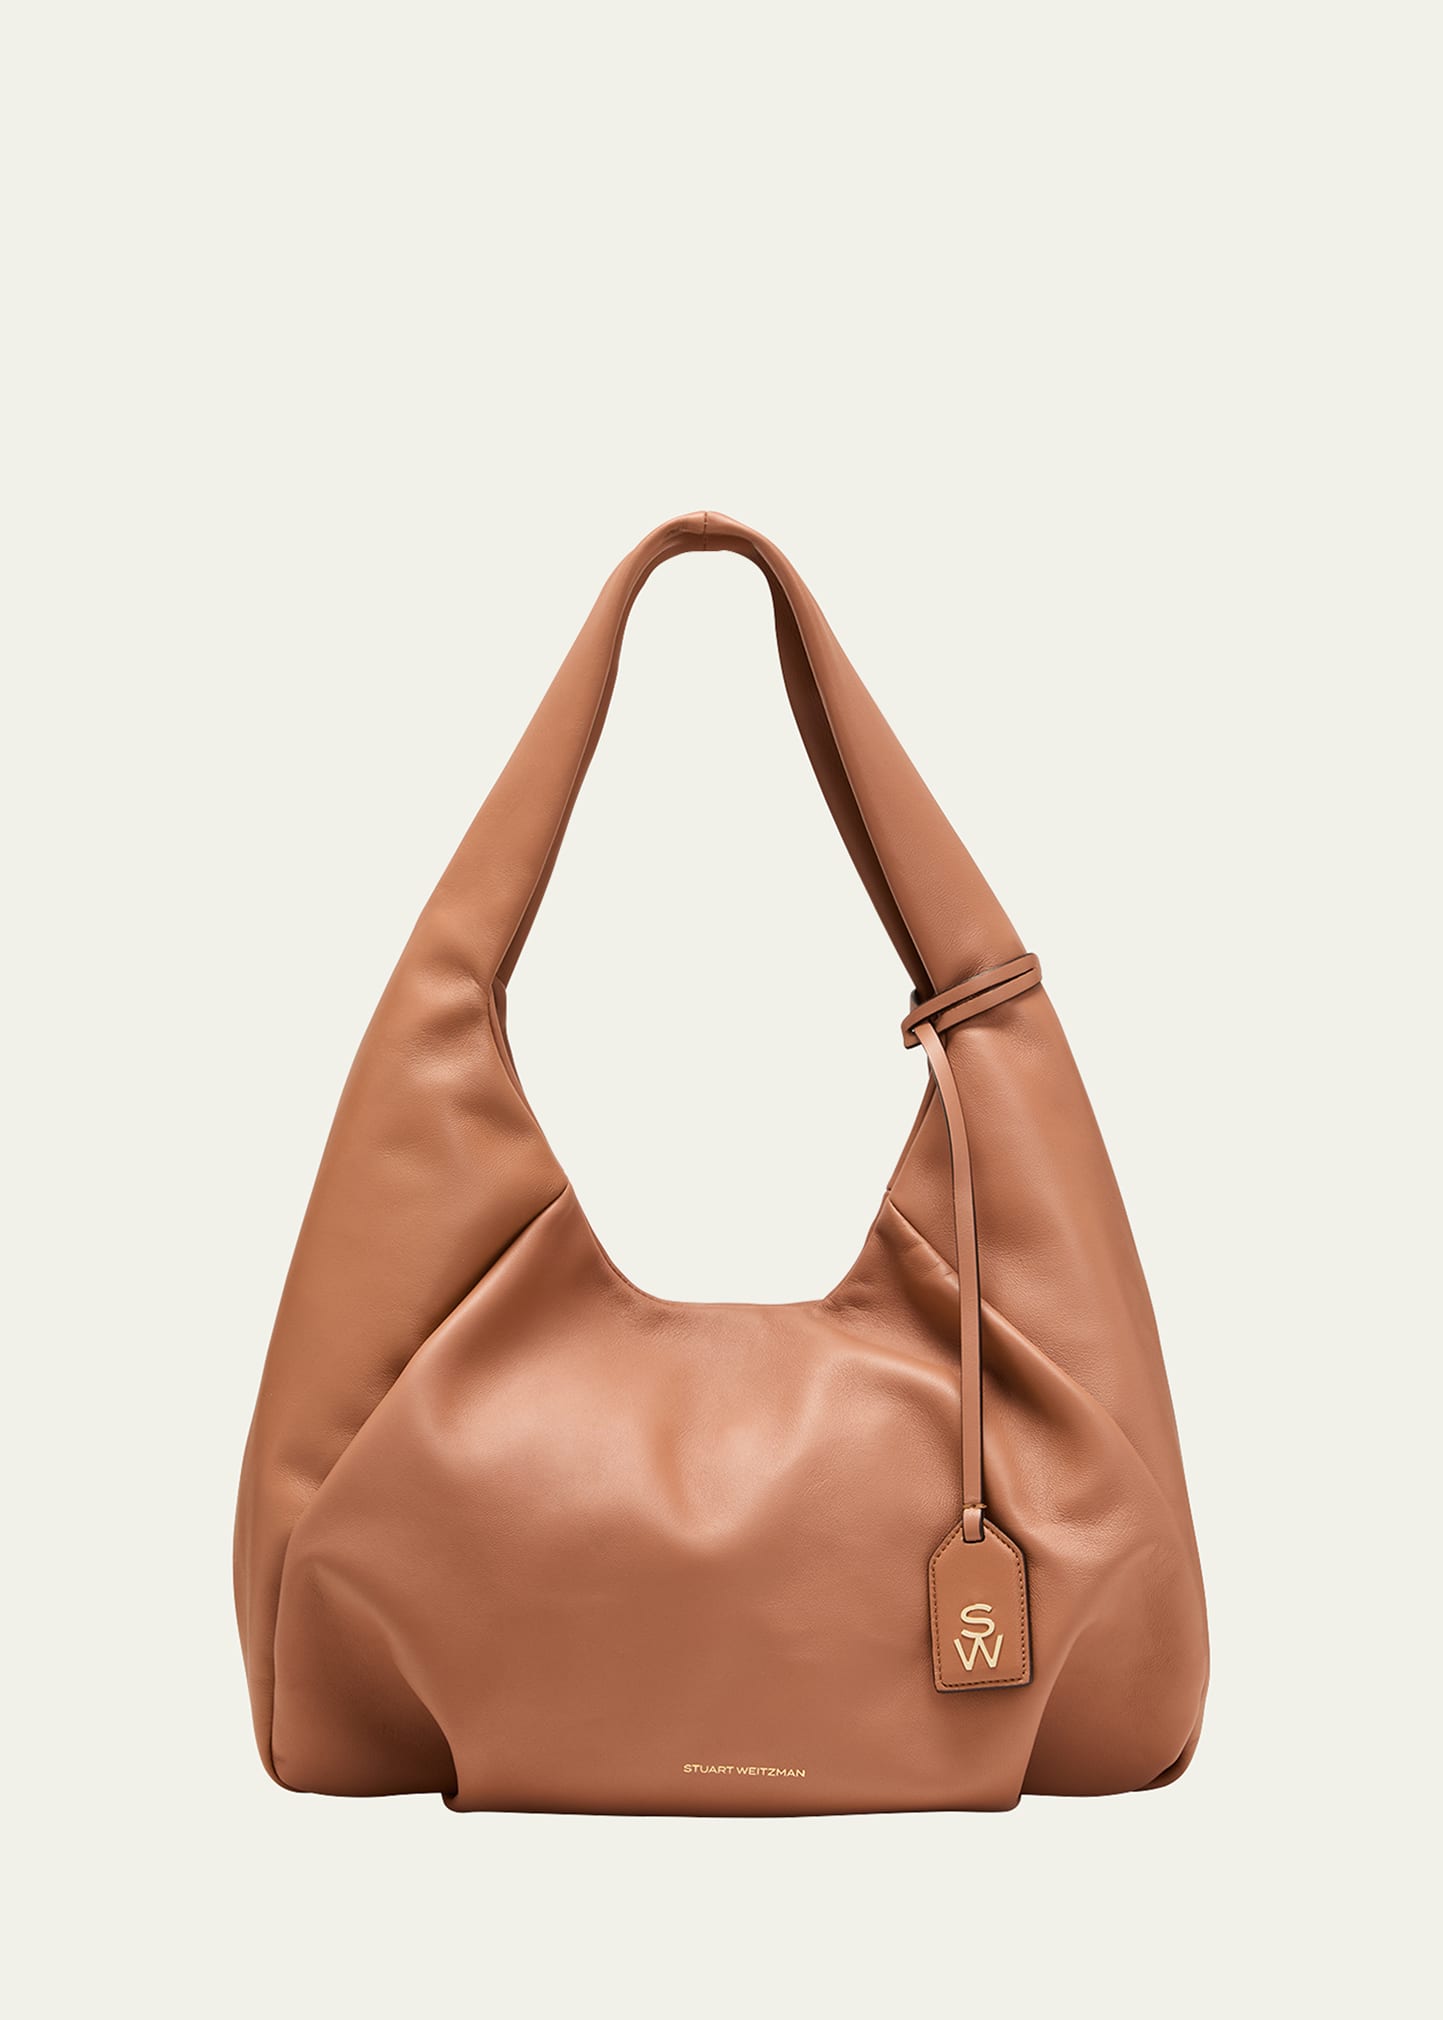 Stuart Weitzman The Moda Napa Leather Hobo Bag In Brown